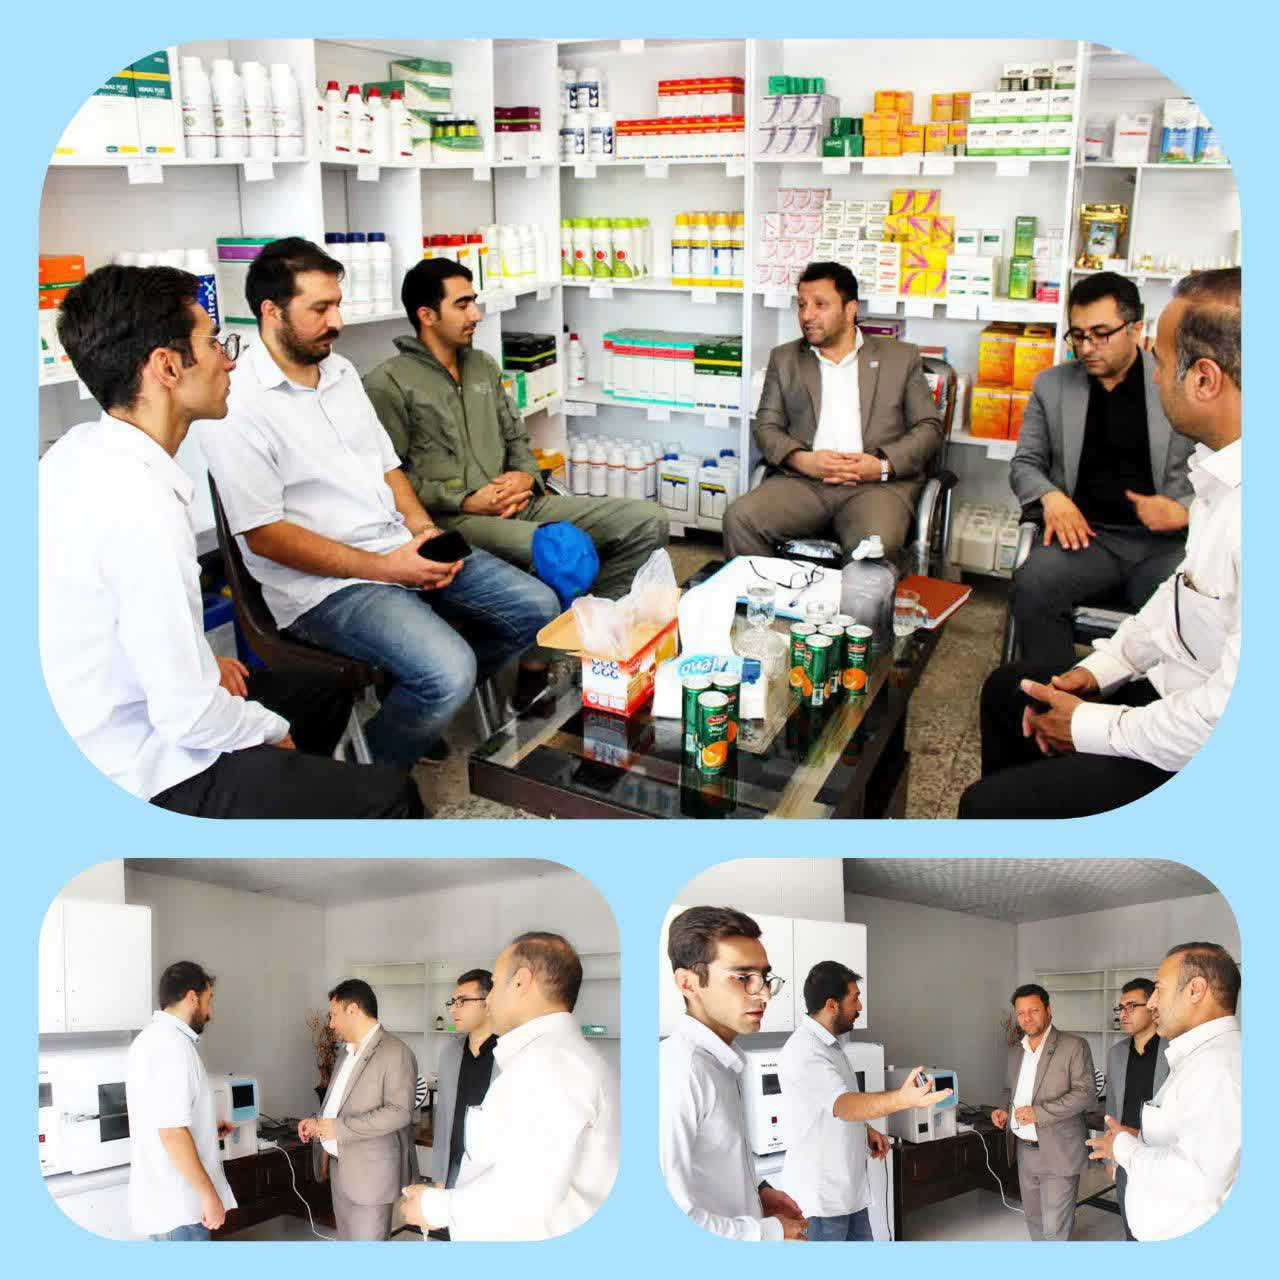 افتتاح بیمارستان مجهز دامپزشکی زاگرس در شهرستان کوهدشت